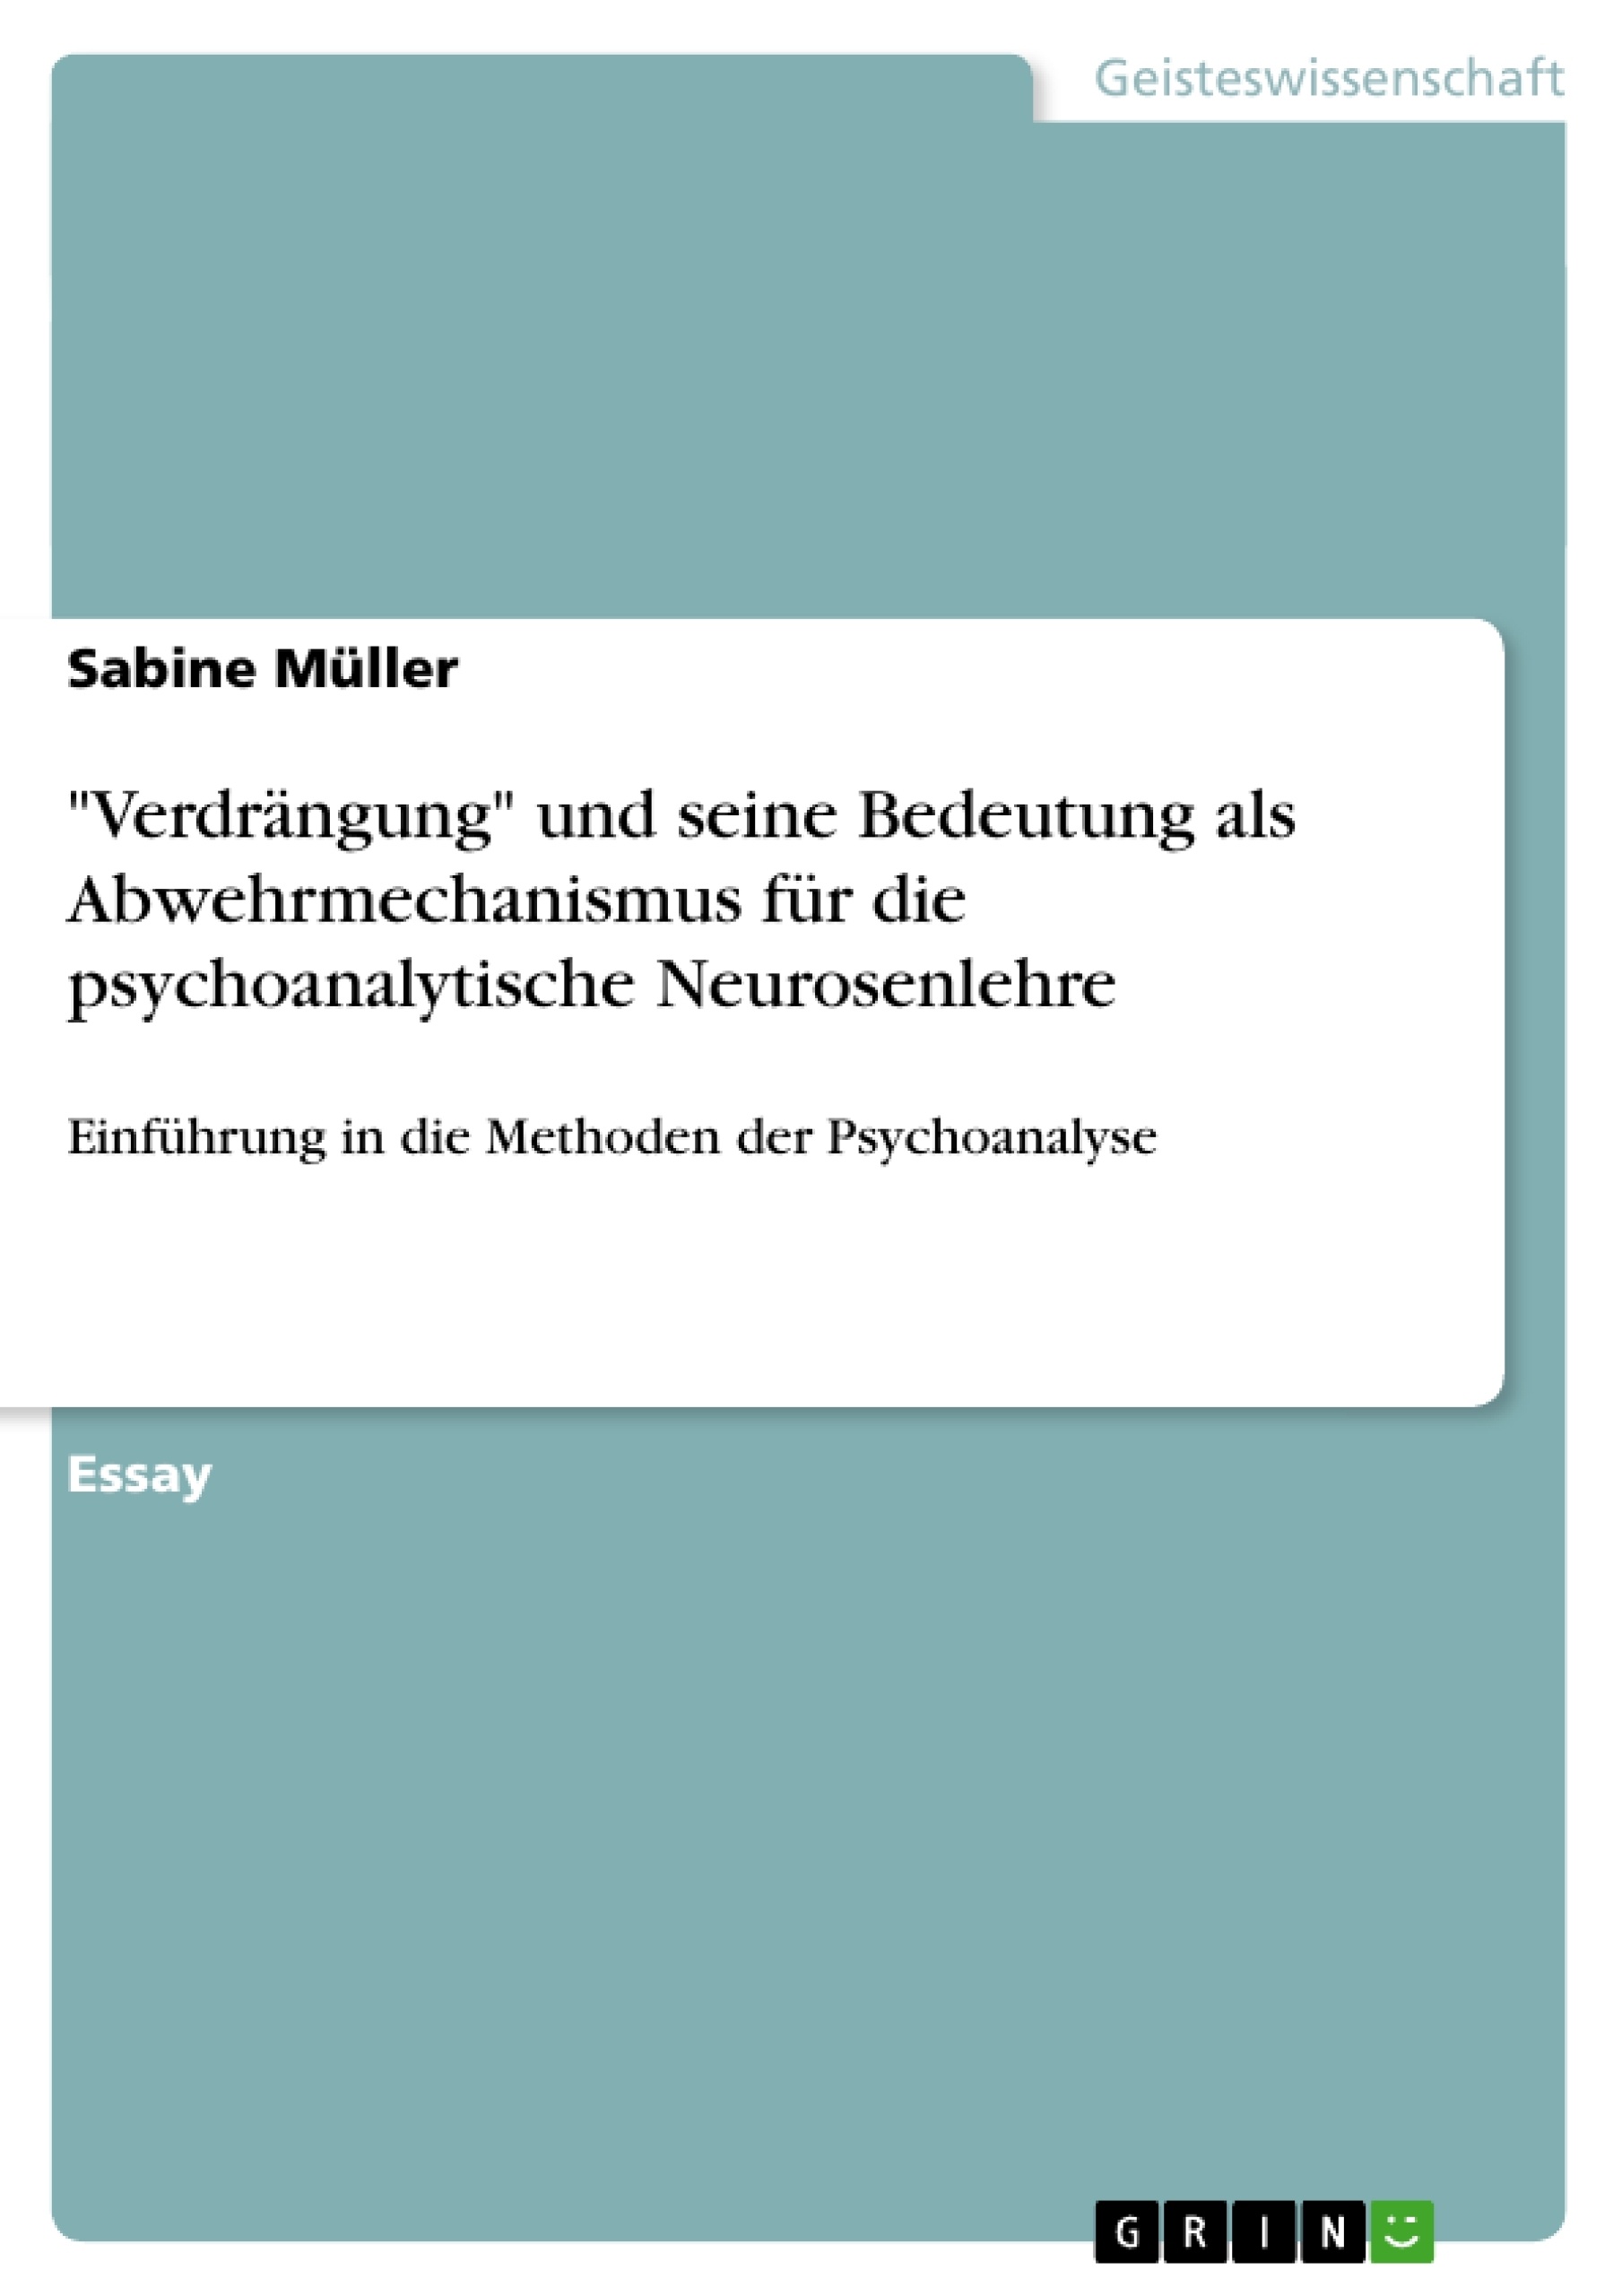 Title: "Verdrängung" und seine Bedeutung als Abwehrmechanismus  für die psychoanalytische Neurosenlehre